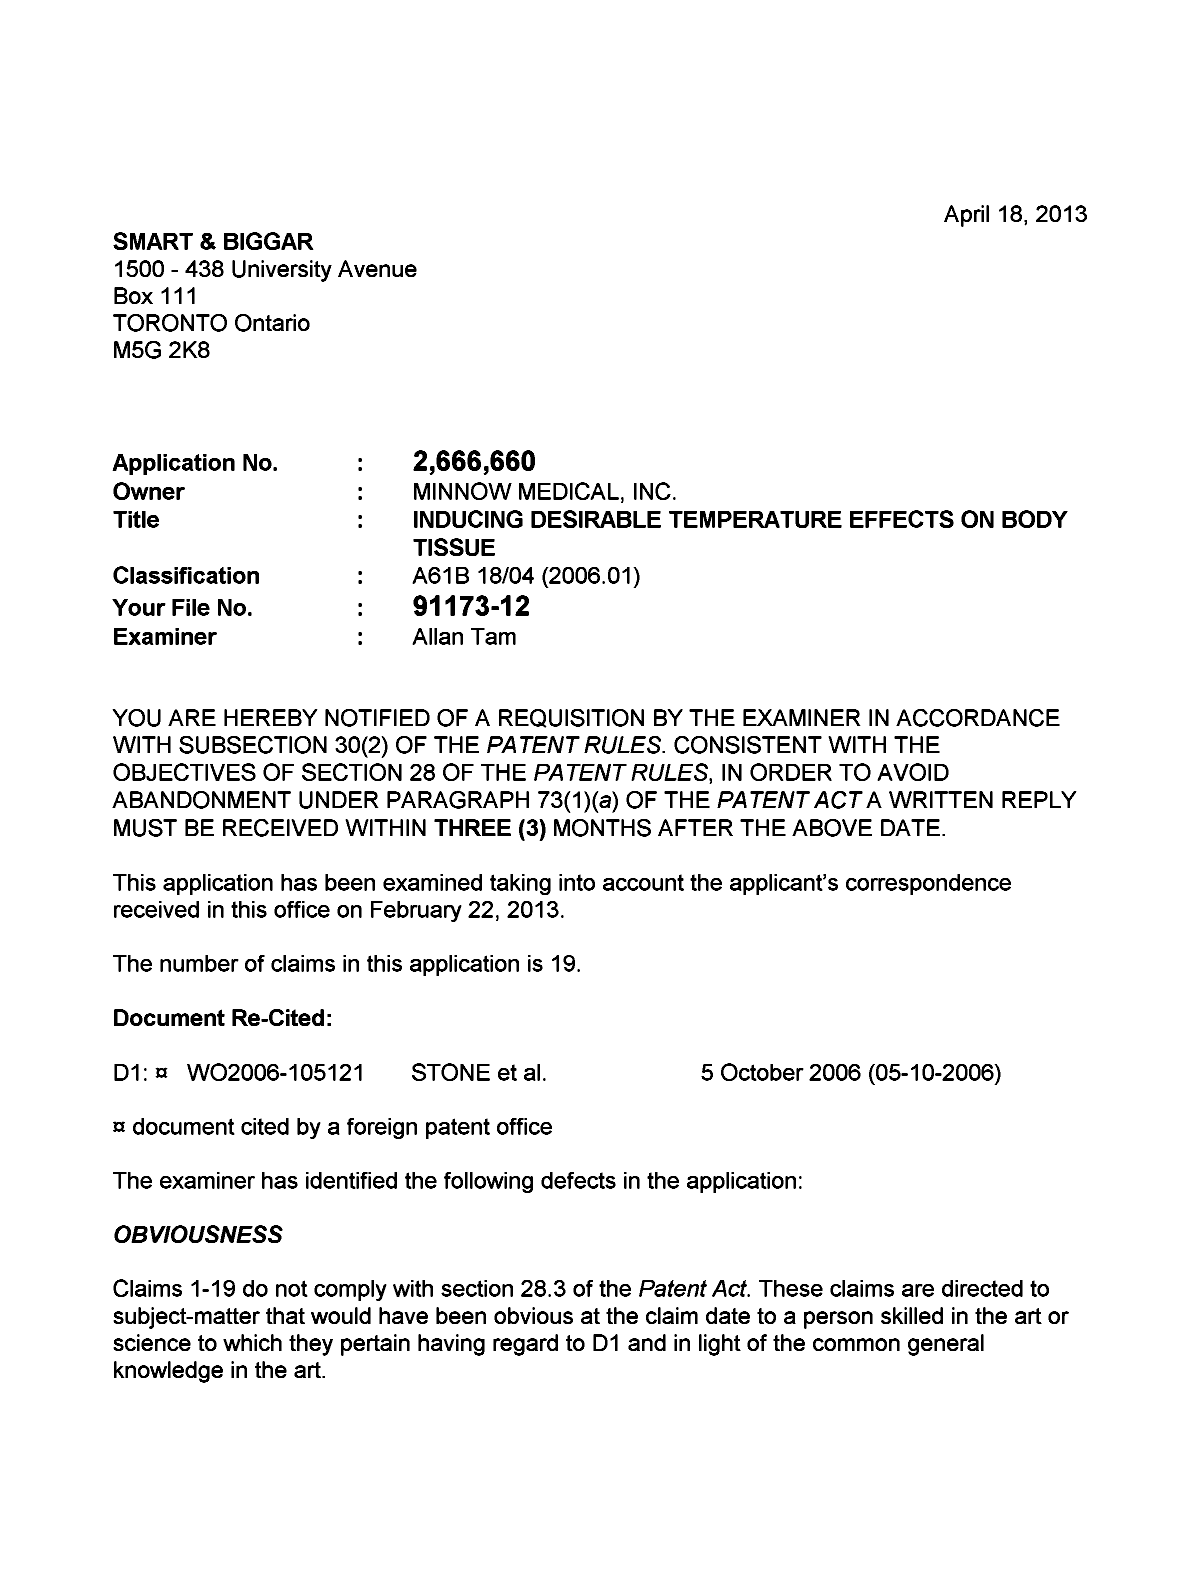 Document de brevet canadien 2666660. Poursuite-Amendment 20130418. Image 1 de 3